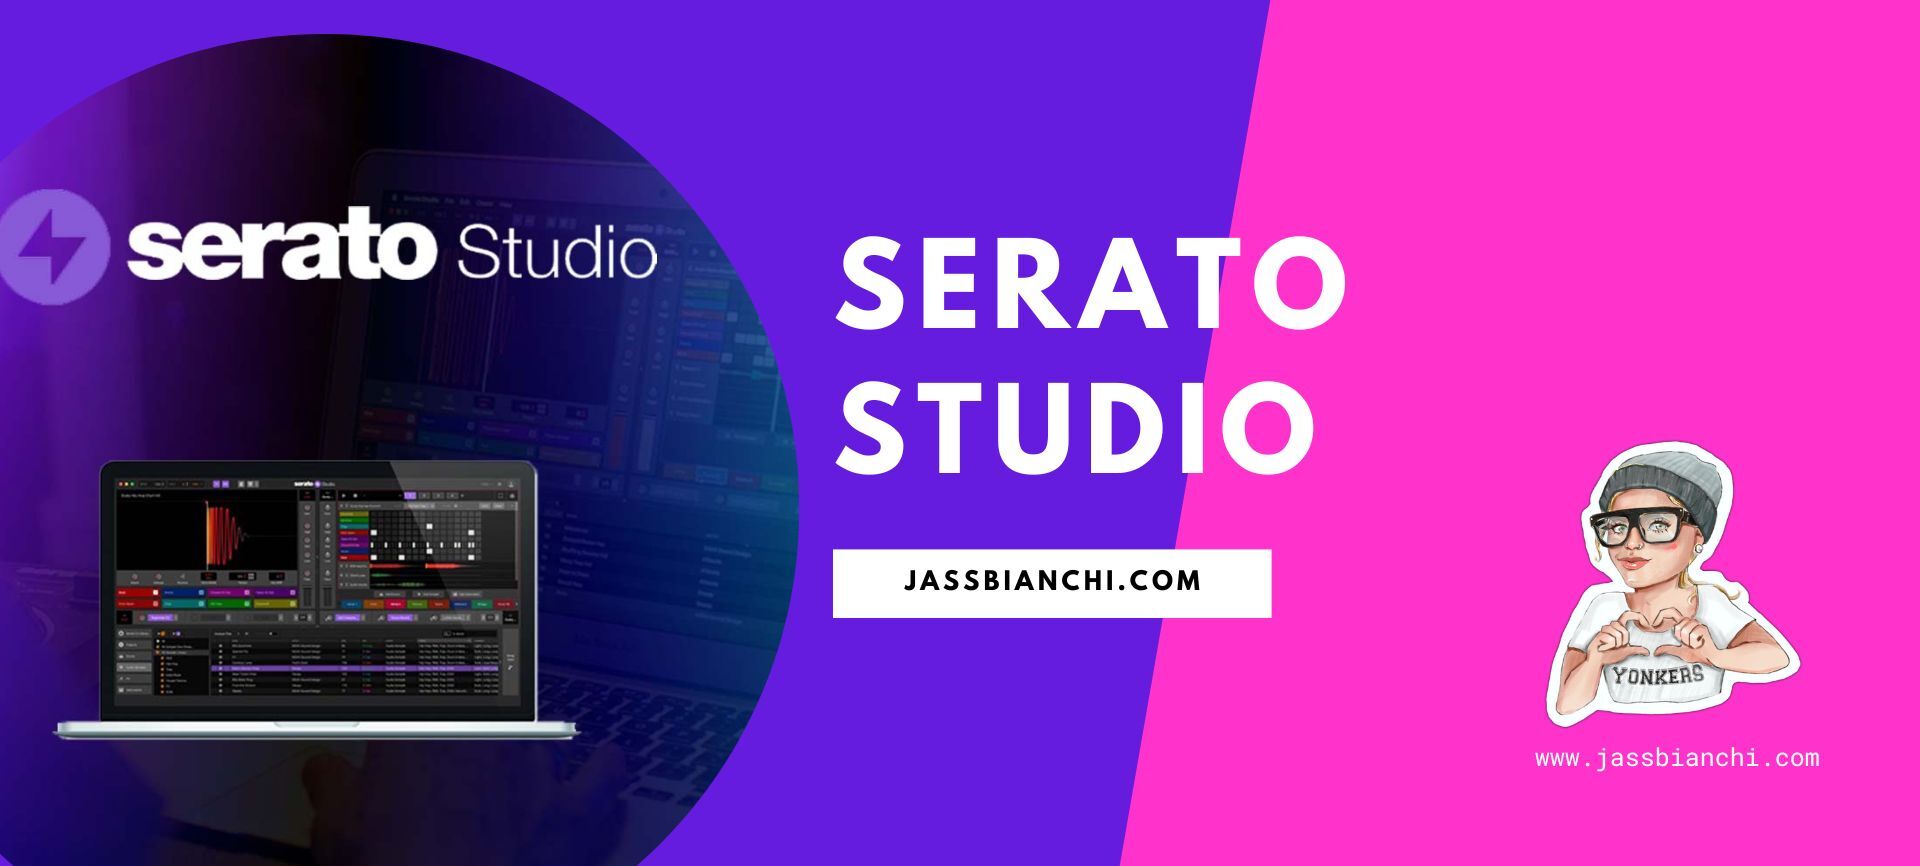 Serato Studio - Free Software to Make Music